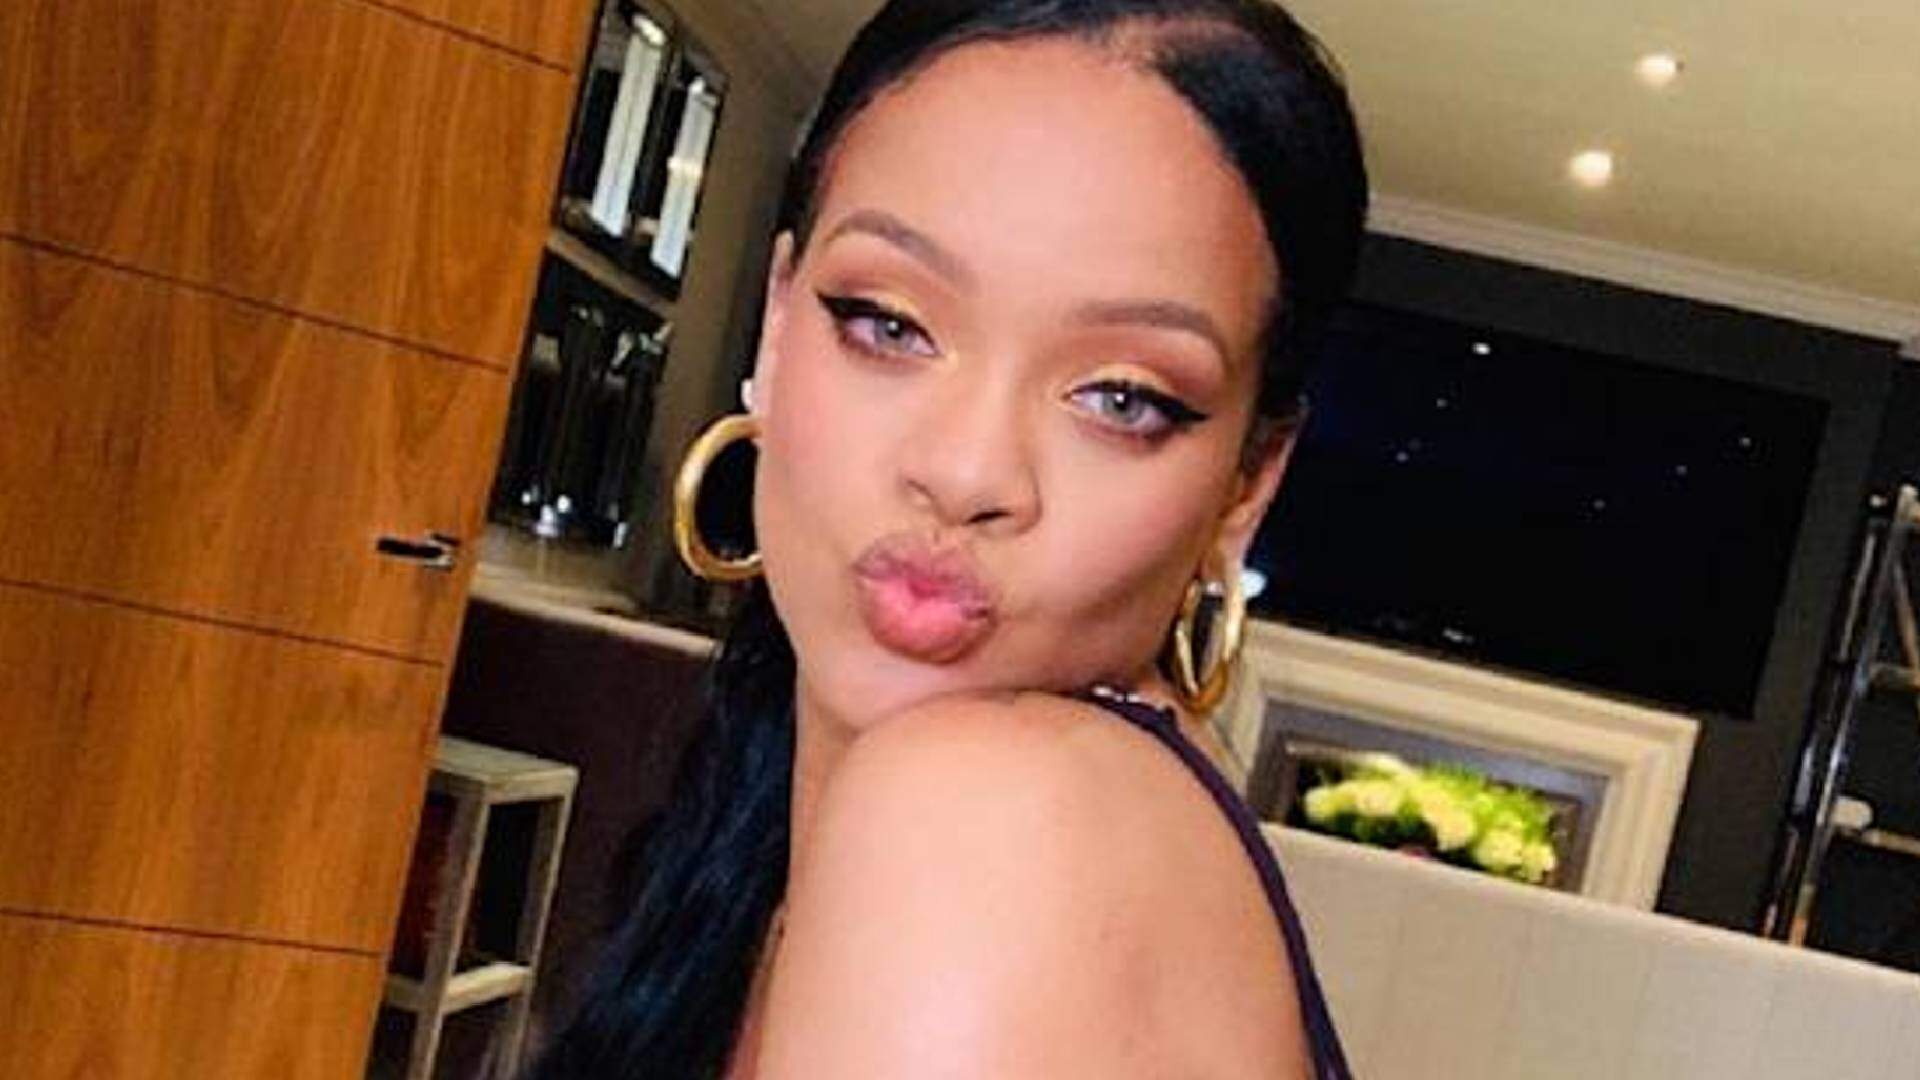 Rihanna debocha de conquista inédita da sua carreira musical e faz brincadeira sobre assunto polêmico - Metropolitana FM